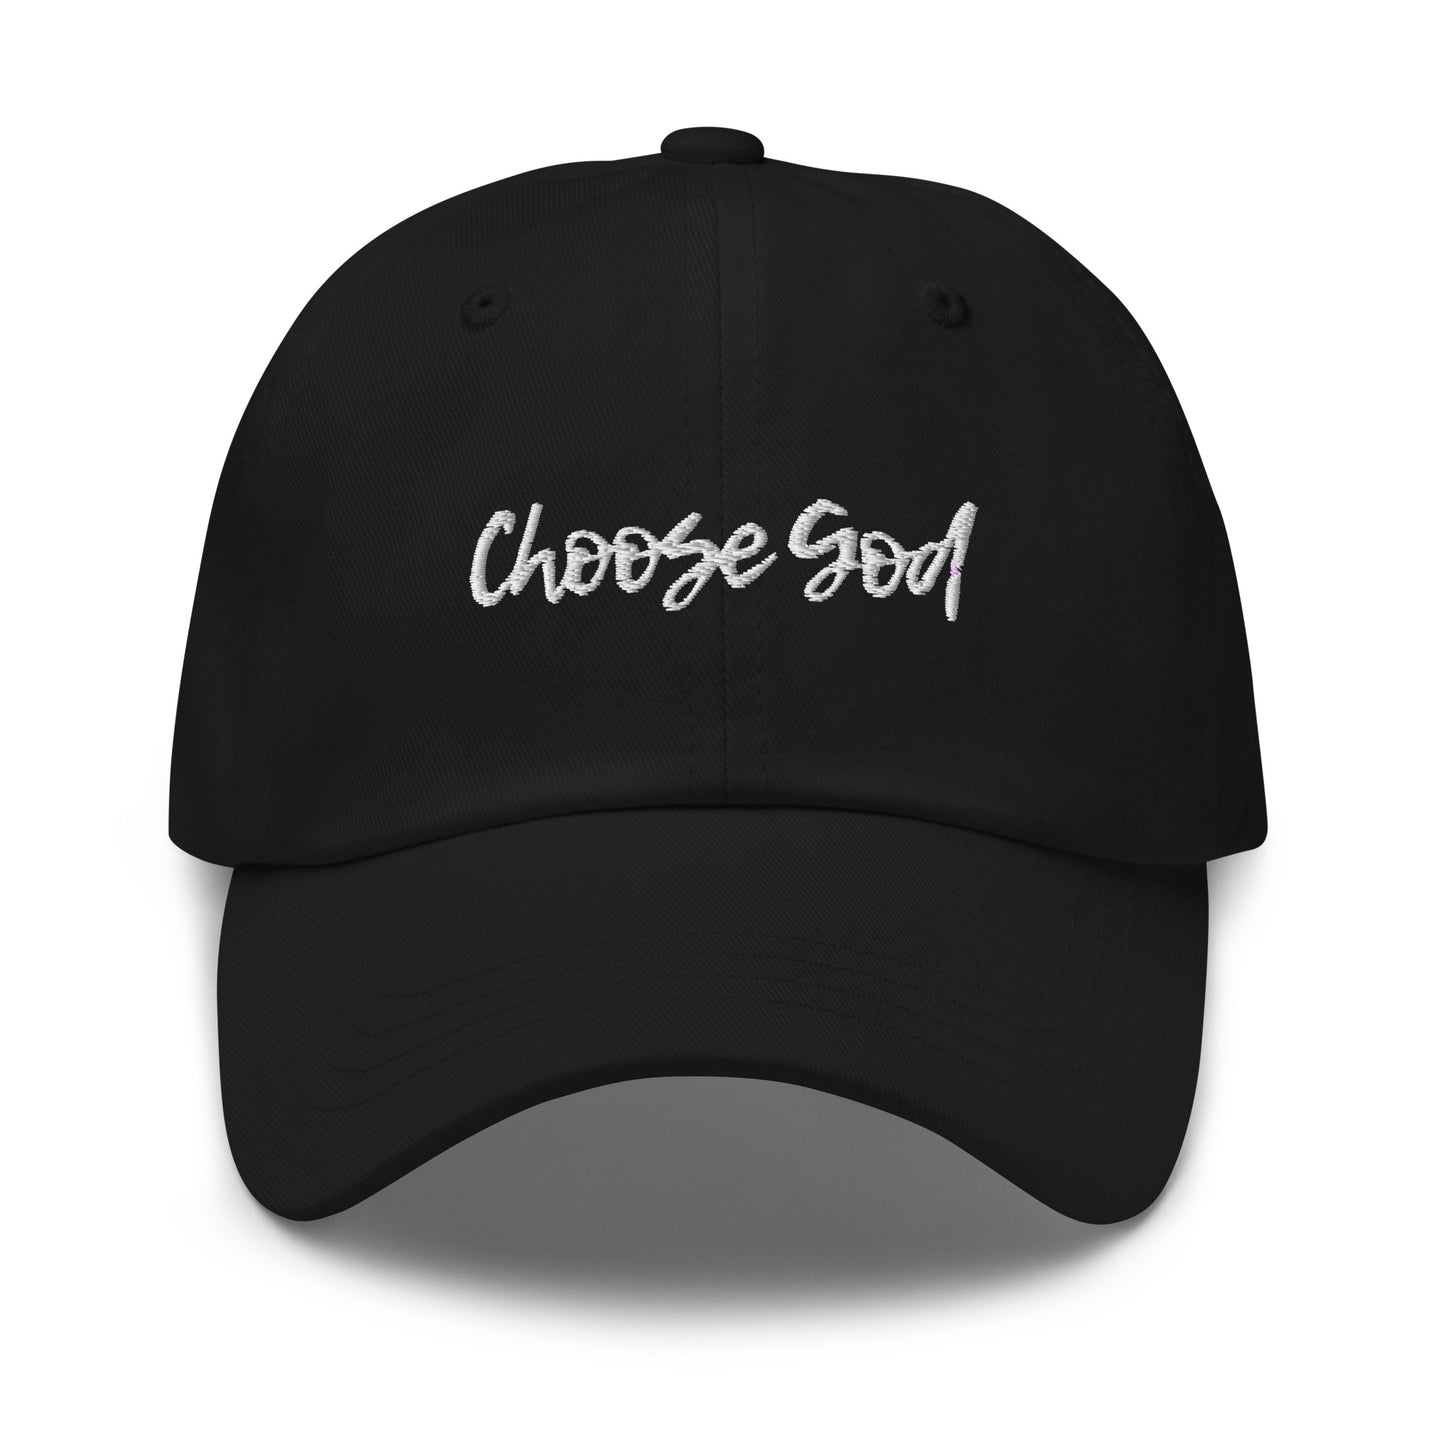 Christian hat black color